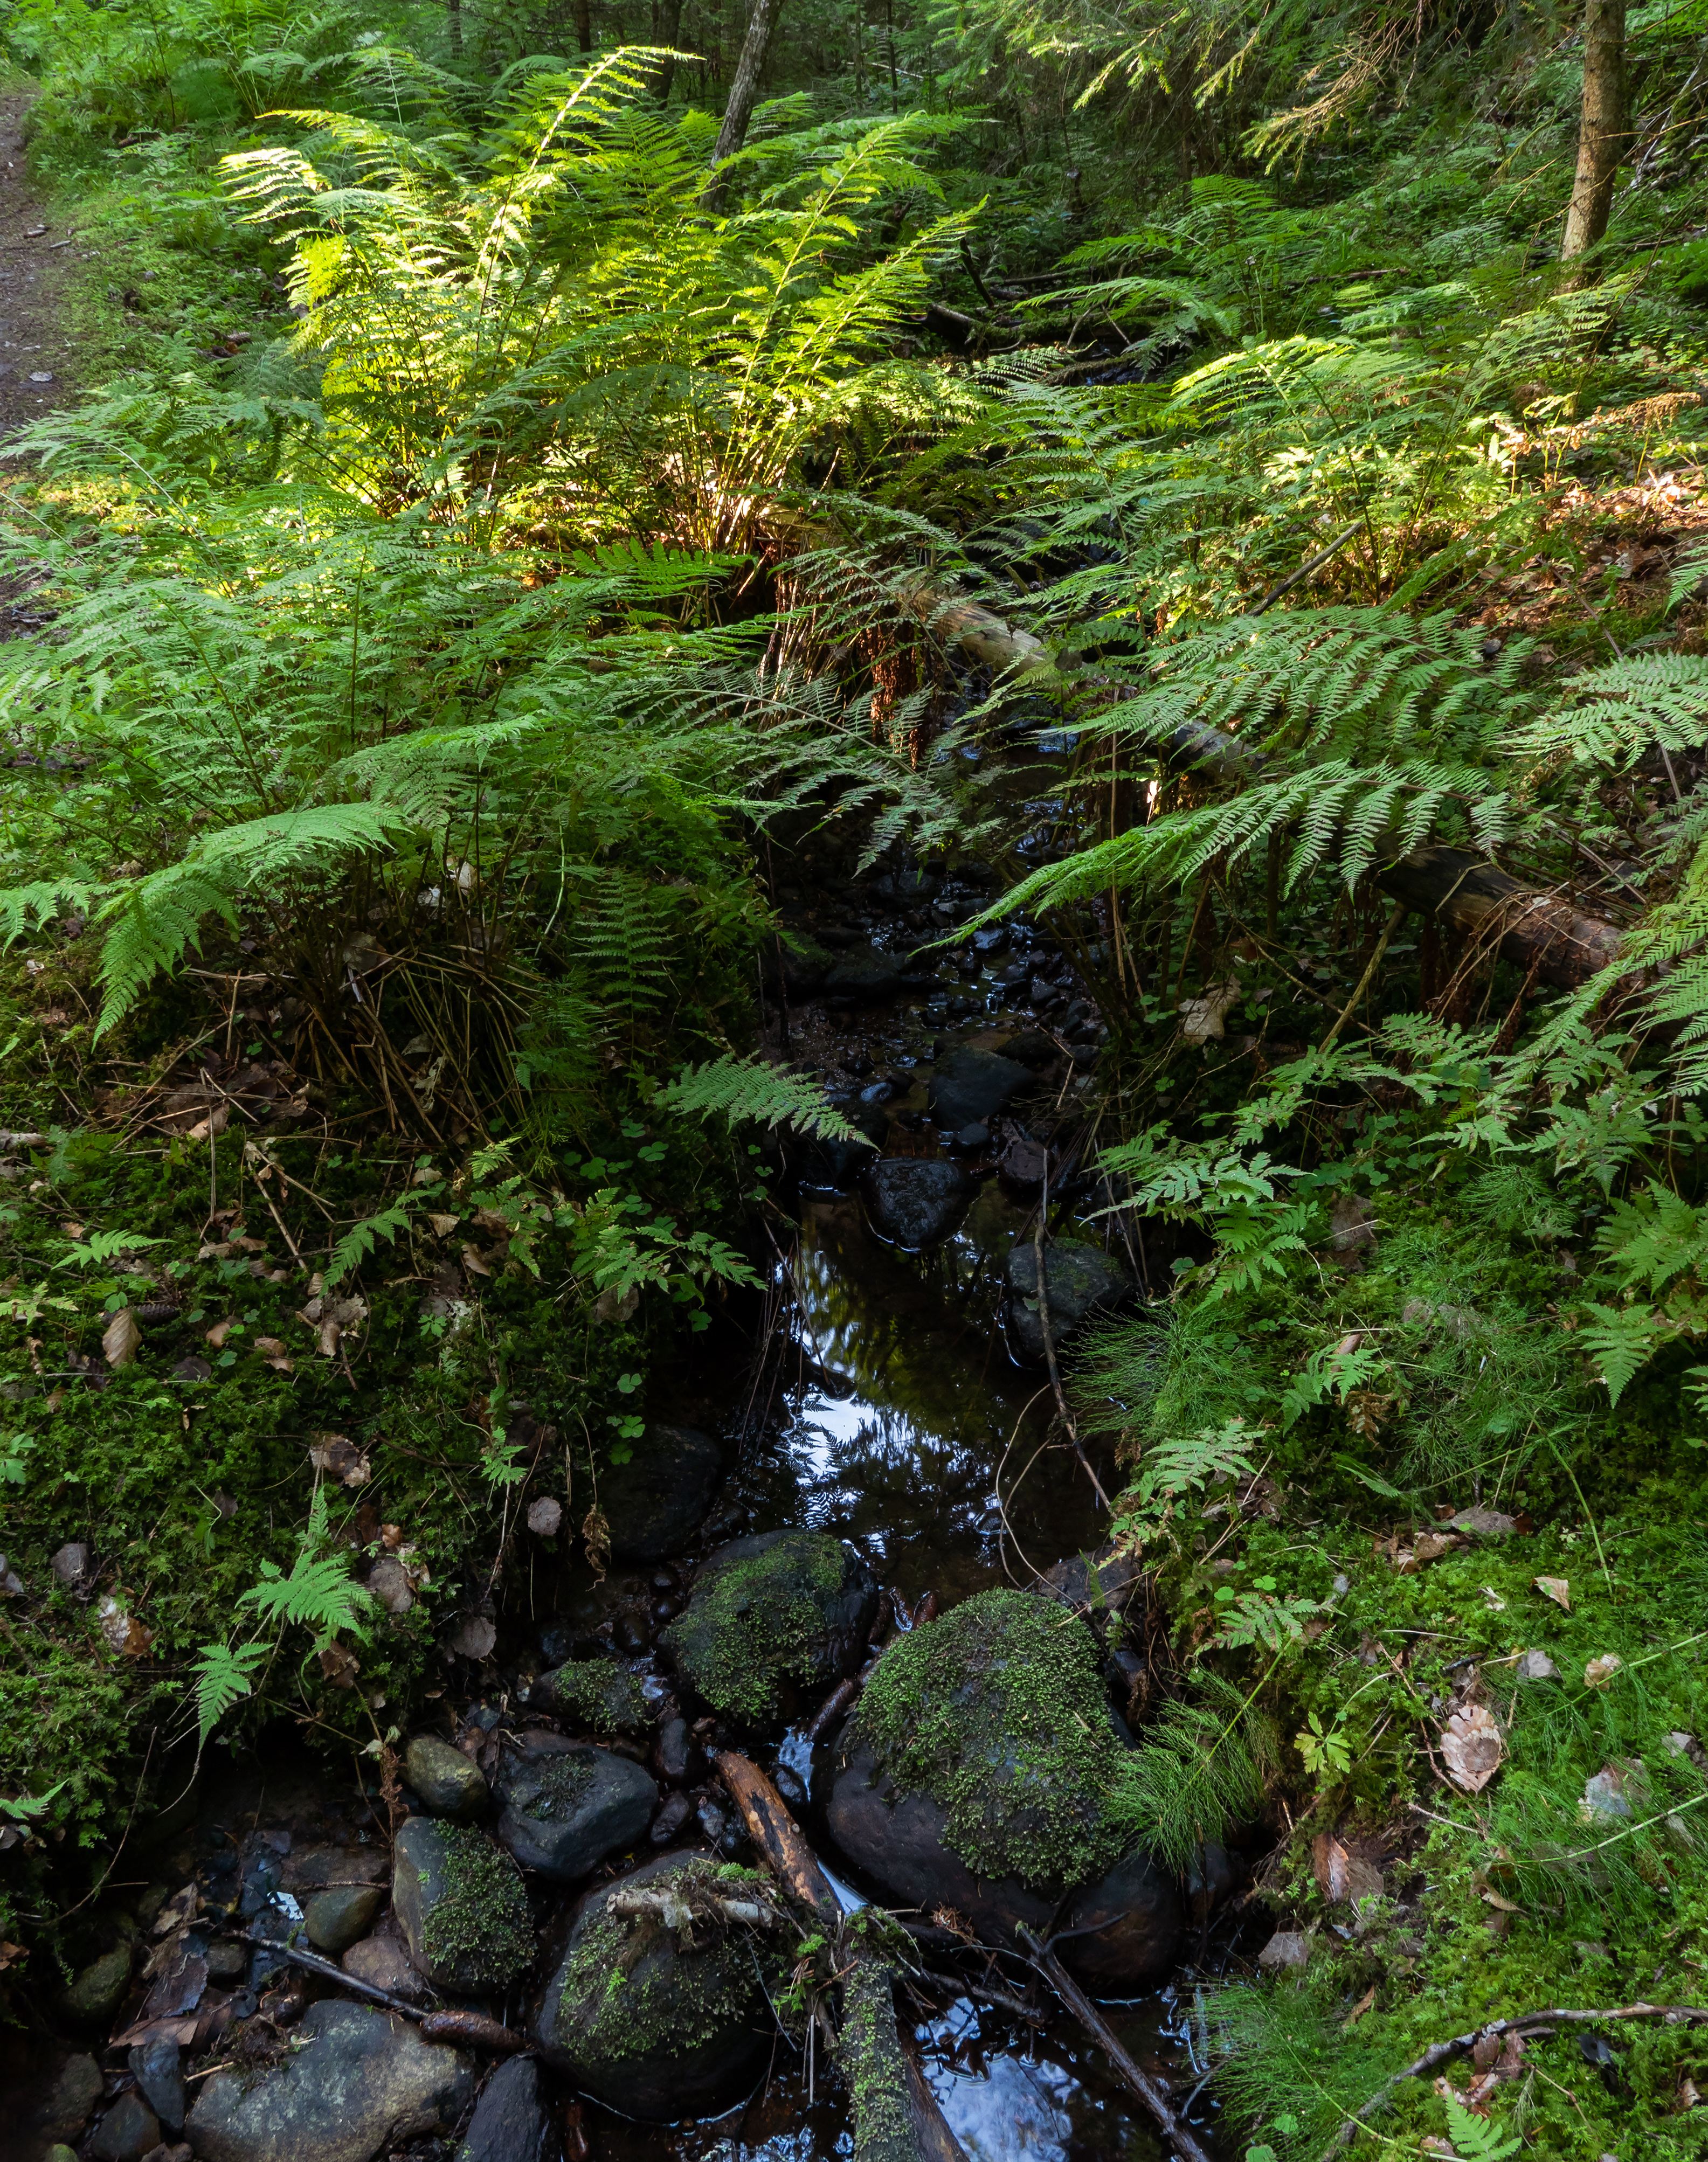 Ferns by the stream in Gullmarsskogen ravine, Boulders, Ferns, Forest, Gullmarsskogen, HQ Photo